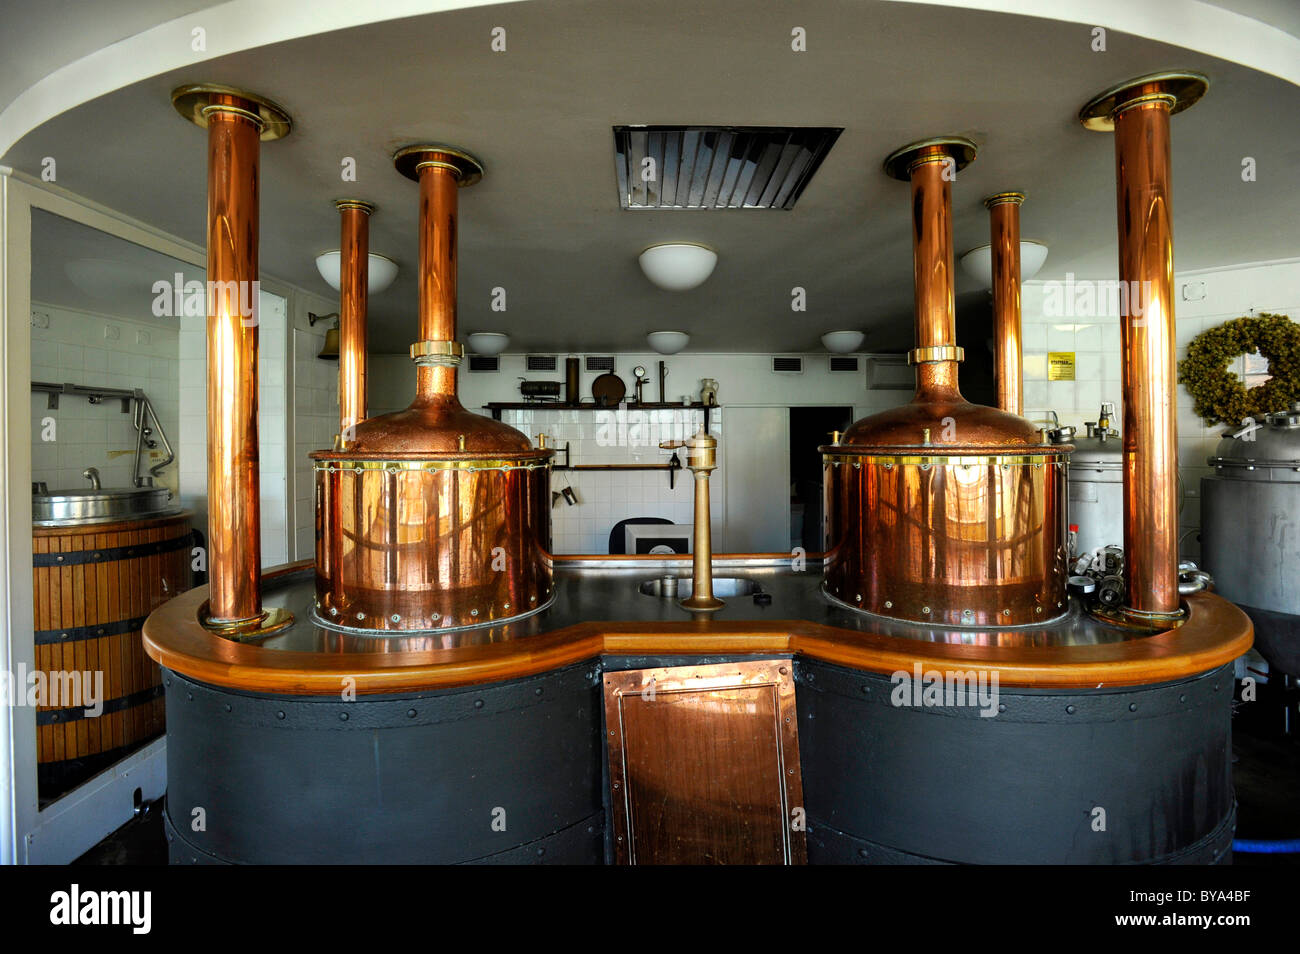 Brewhouse, brewing électrique de l'historique brasserie Pilsner Urquell, Pilsen, en Bohême, République Tchèque, Europe Banque D'Images